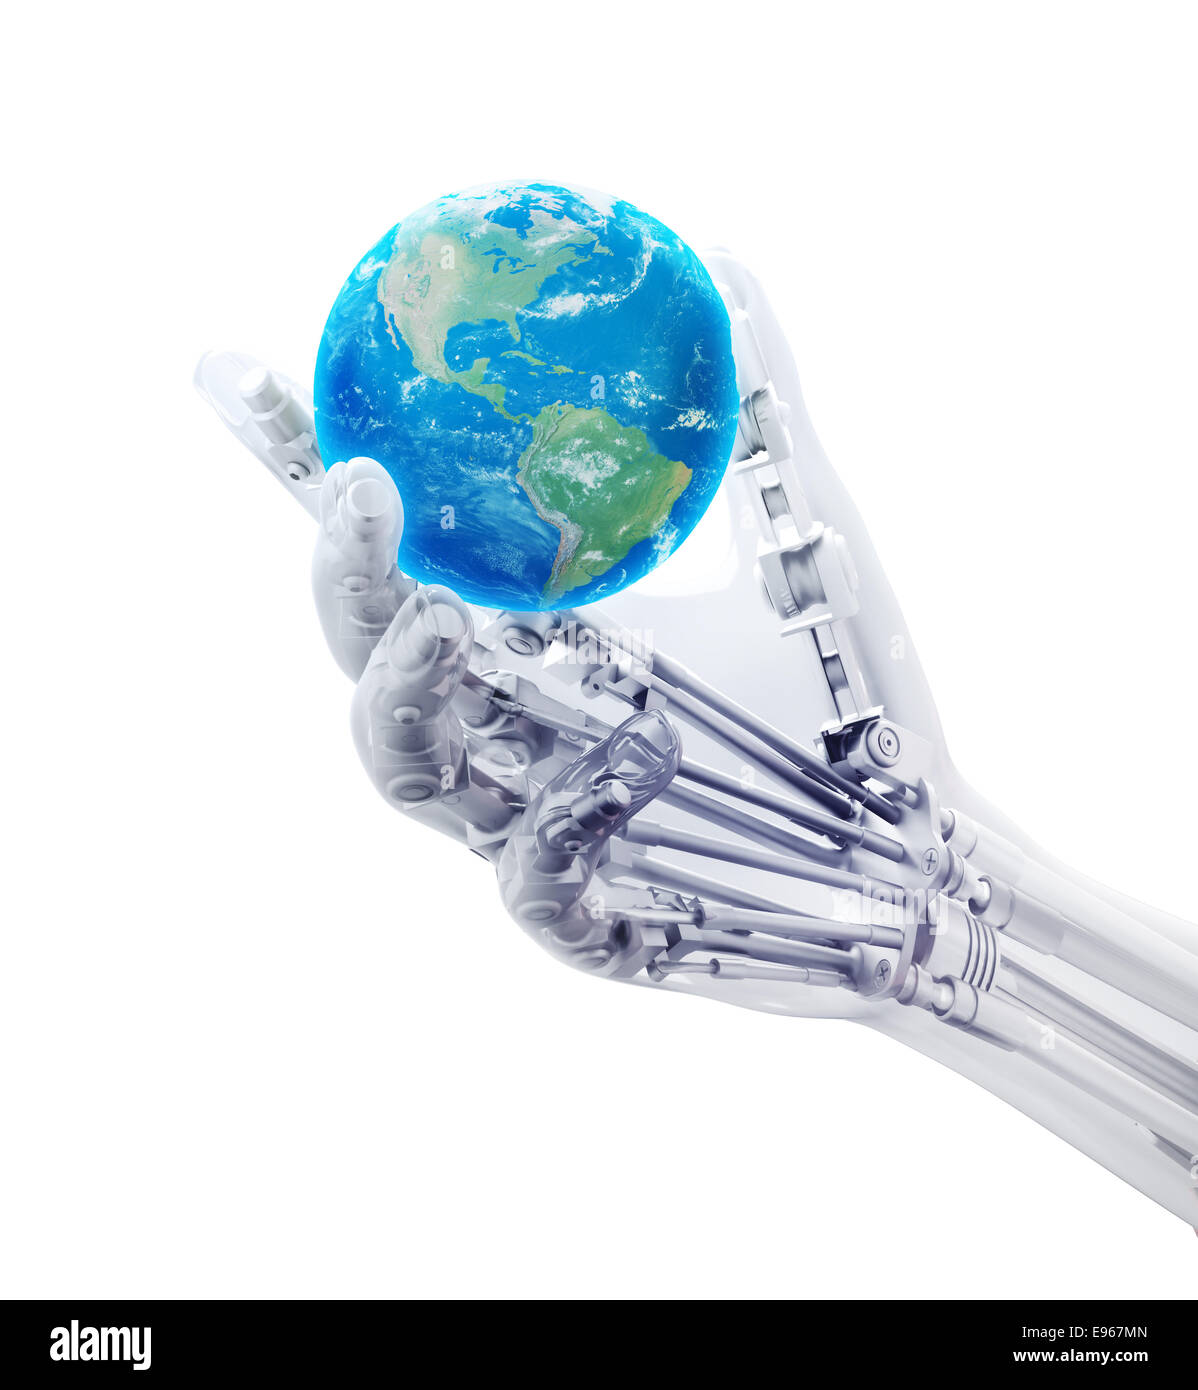 Un membre artificiel tenant un globe- la robotique et de la prothétique technologie concept Banque D'Images